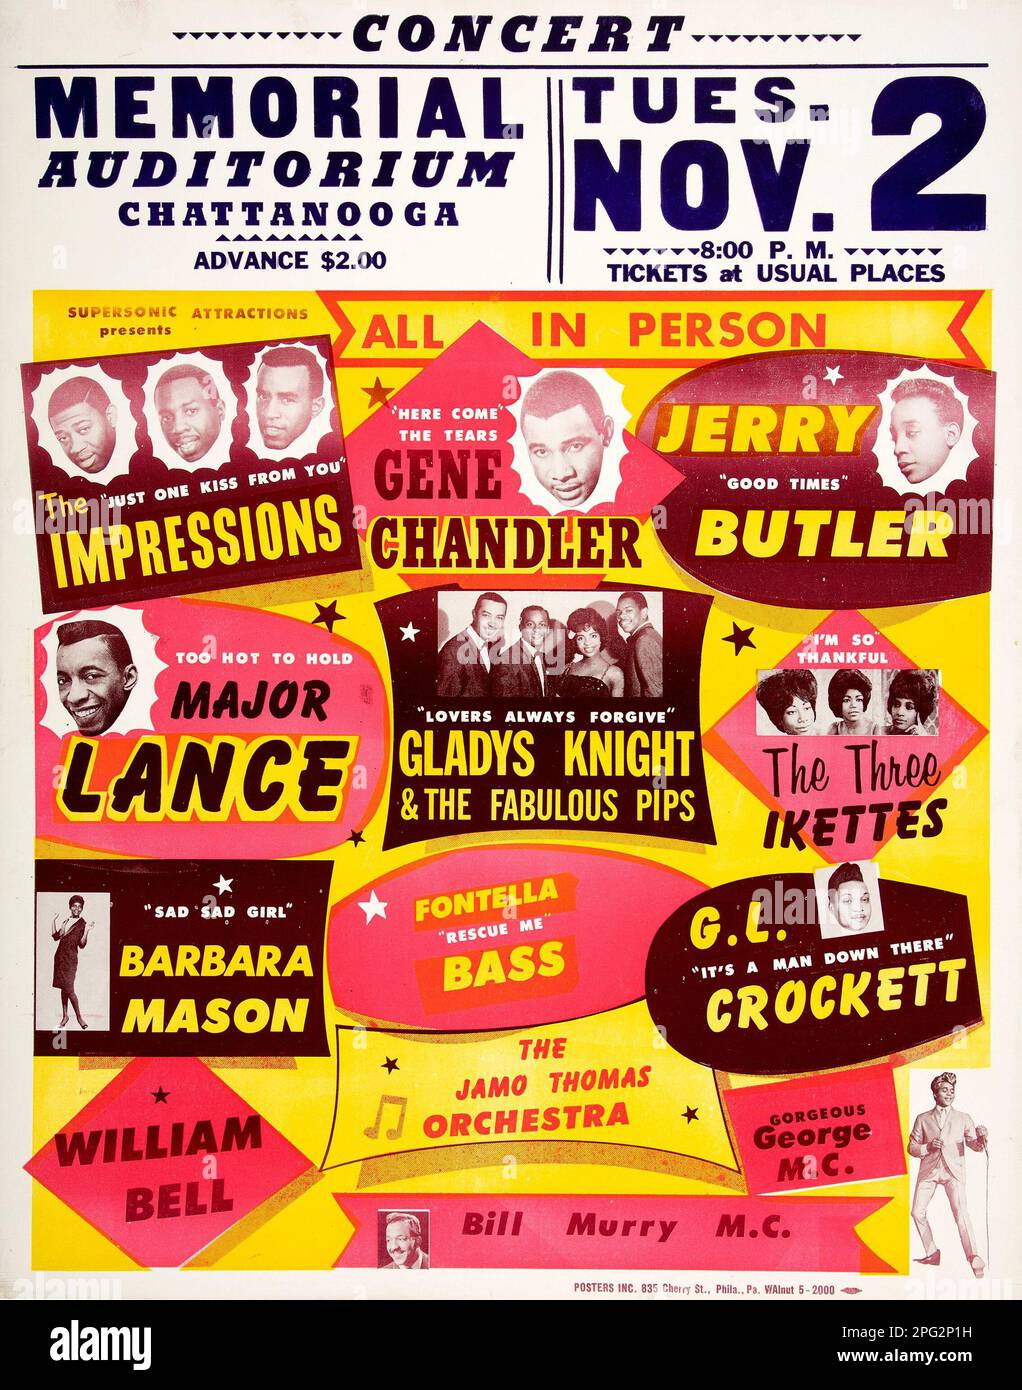 Memorial Auditorium Chattanooga - Gladys Knight, Gene Chandler, Jerry Butler und mehr - Motown-Konzertposter 1965 Stockfoto